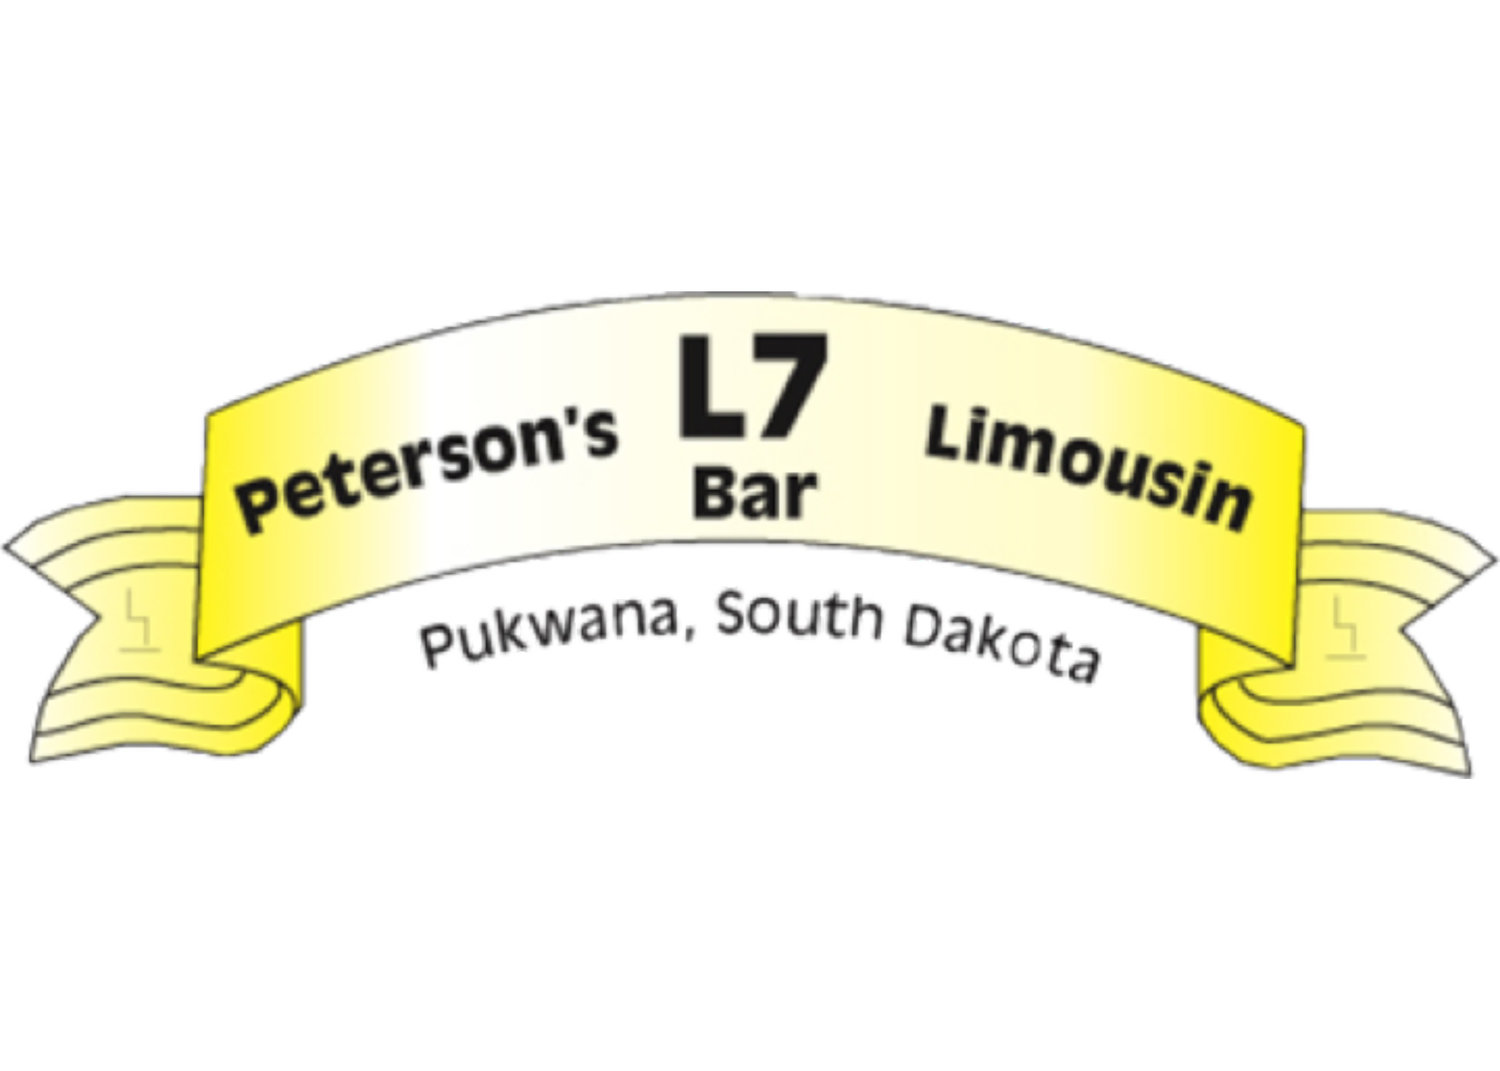 Peterson's L7 Bar Limousin